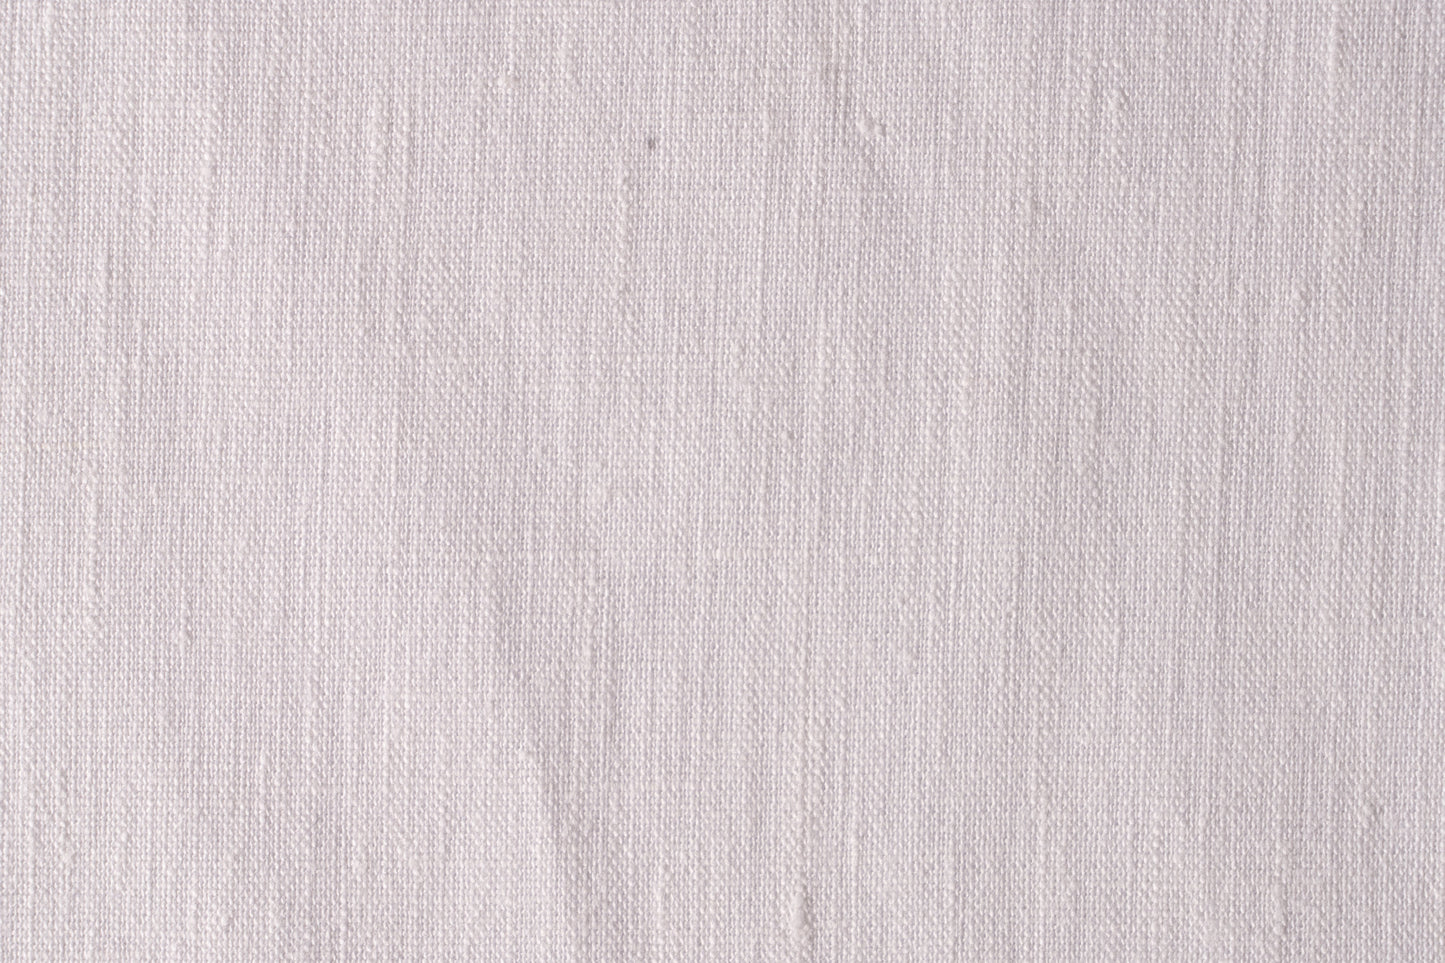 100% Linen Medium Weight Extra Wide Fabric 112" Wide, 5.5 oz